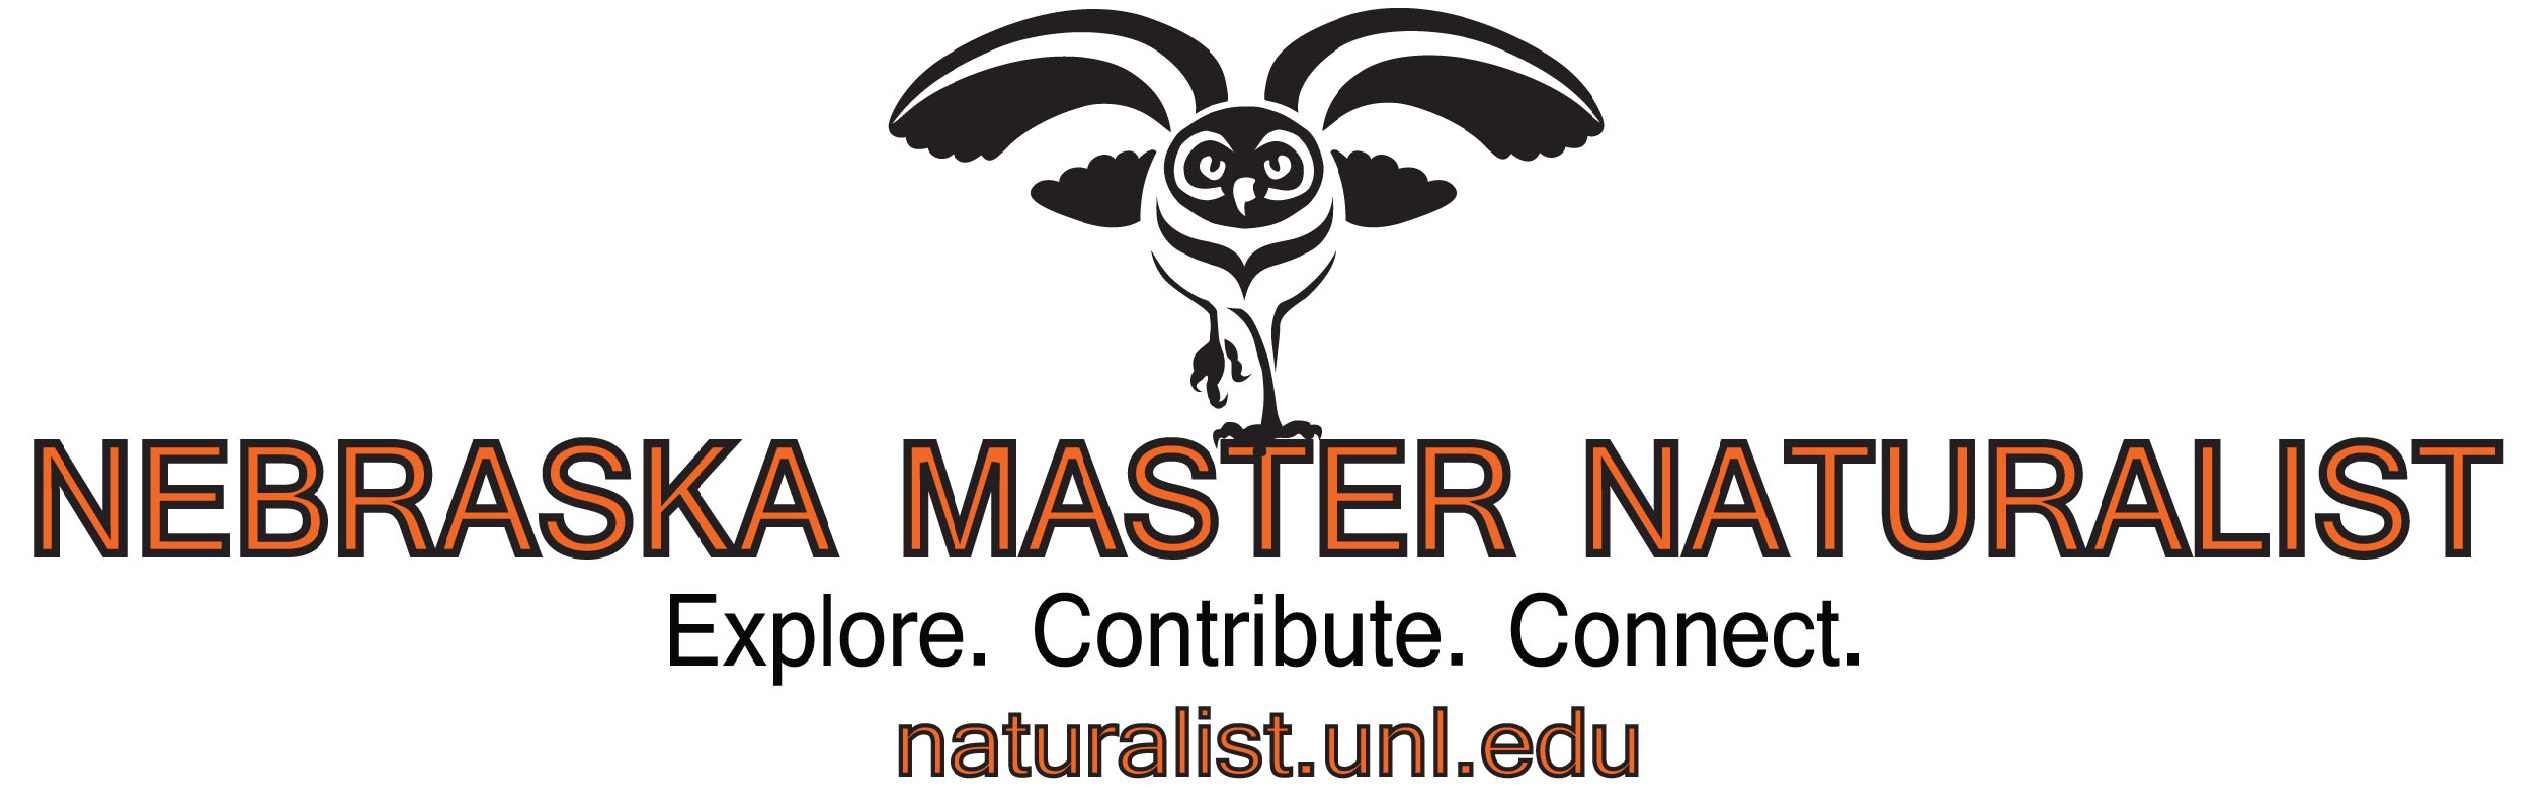 Nebraska Master Naturalist program receives third installment of an Nebraska Environmental Trust grant in May.